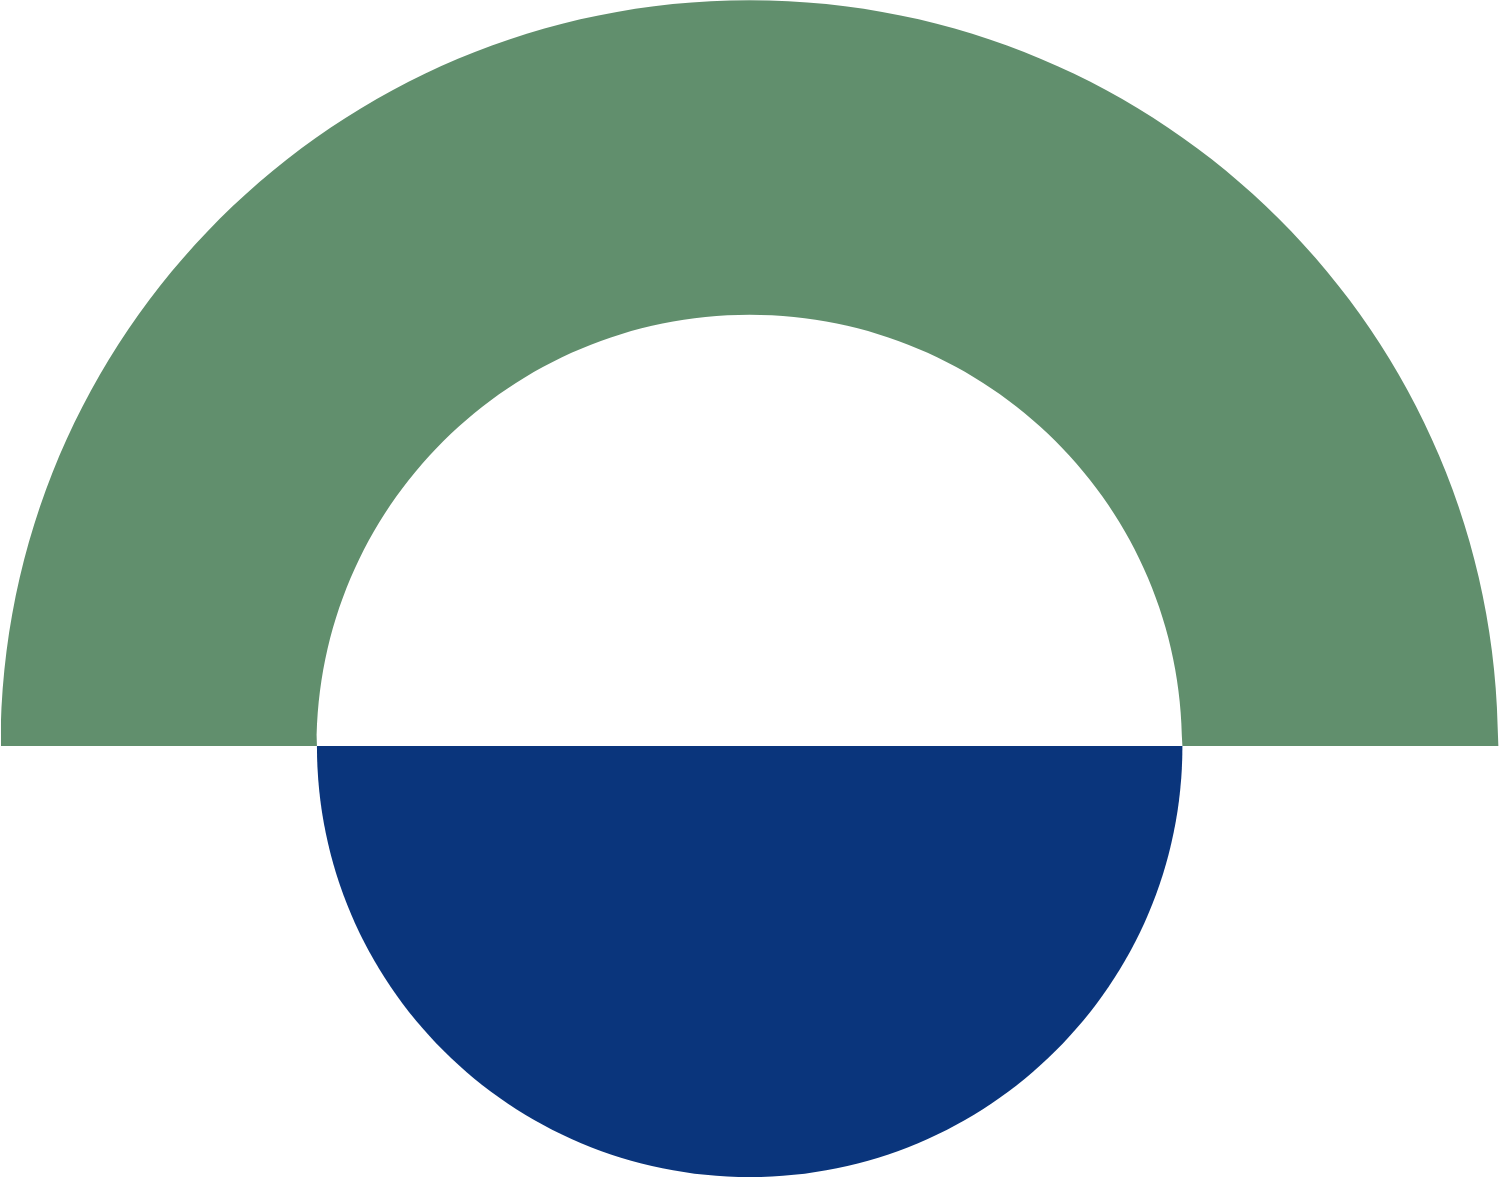 Port of Tauranga logo (PNG transparent)